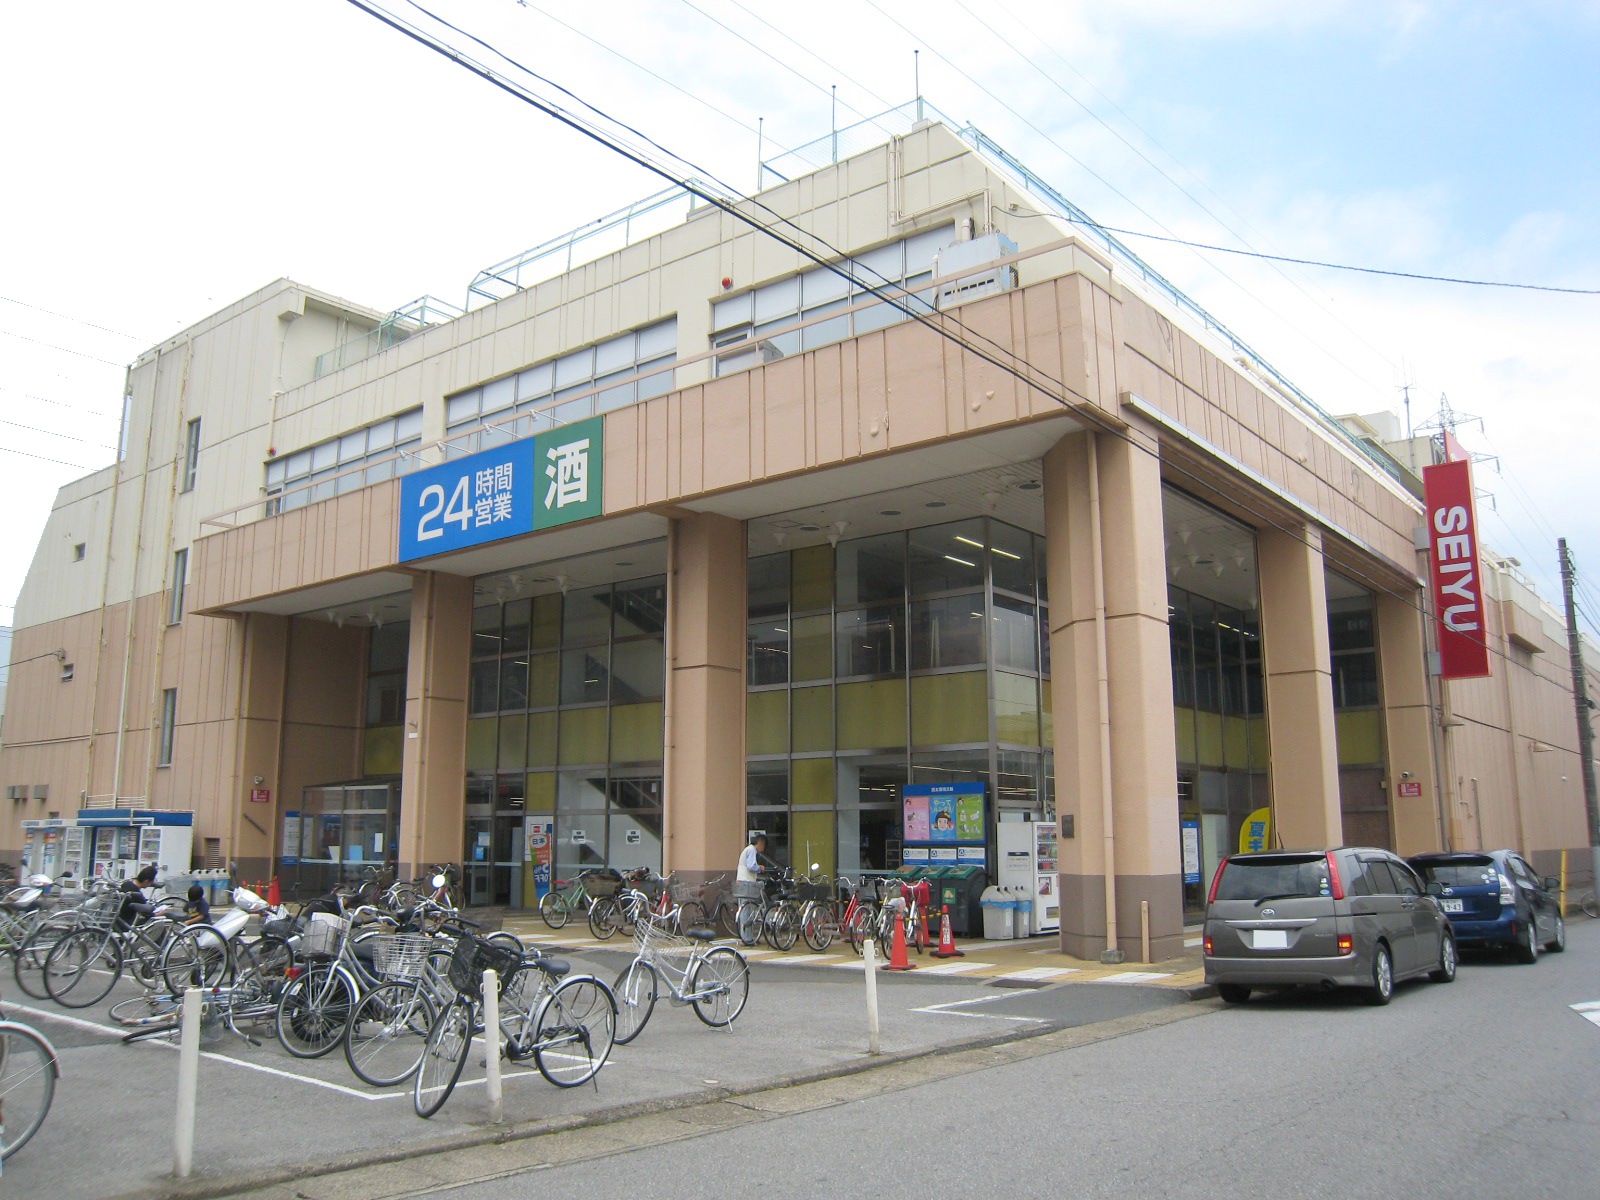 Supermarket. Seiyu Tsuga store up to (super) 301m